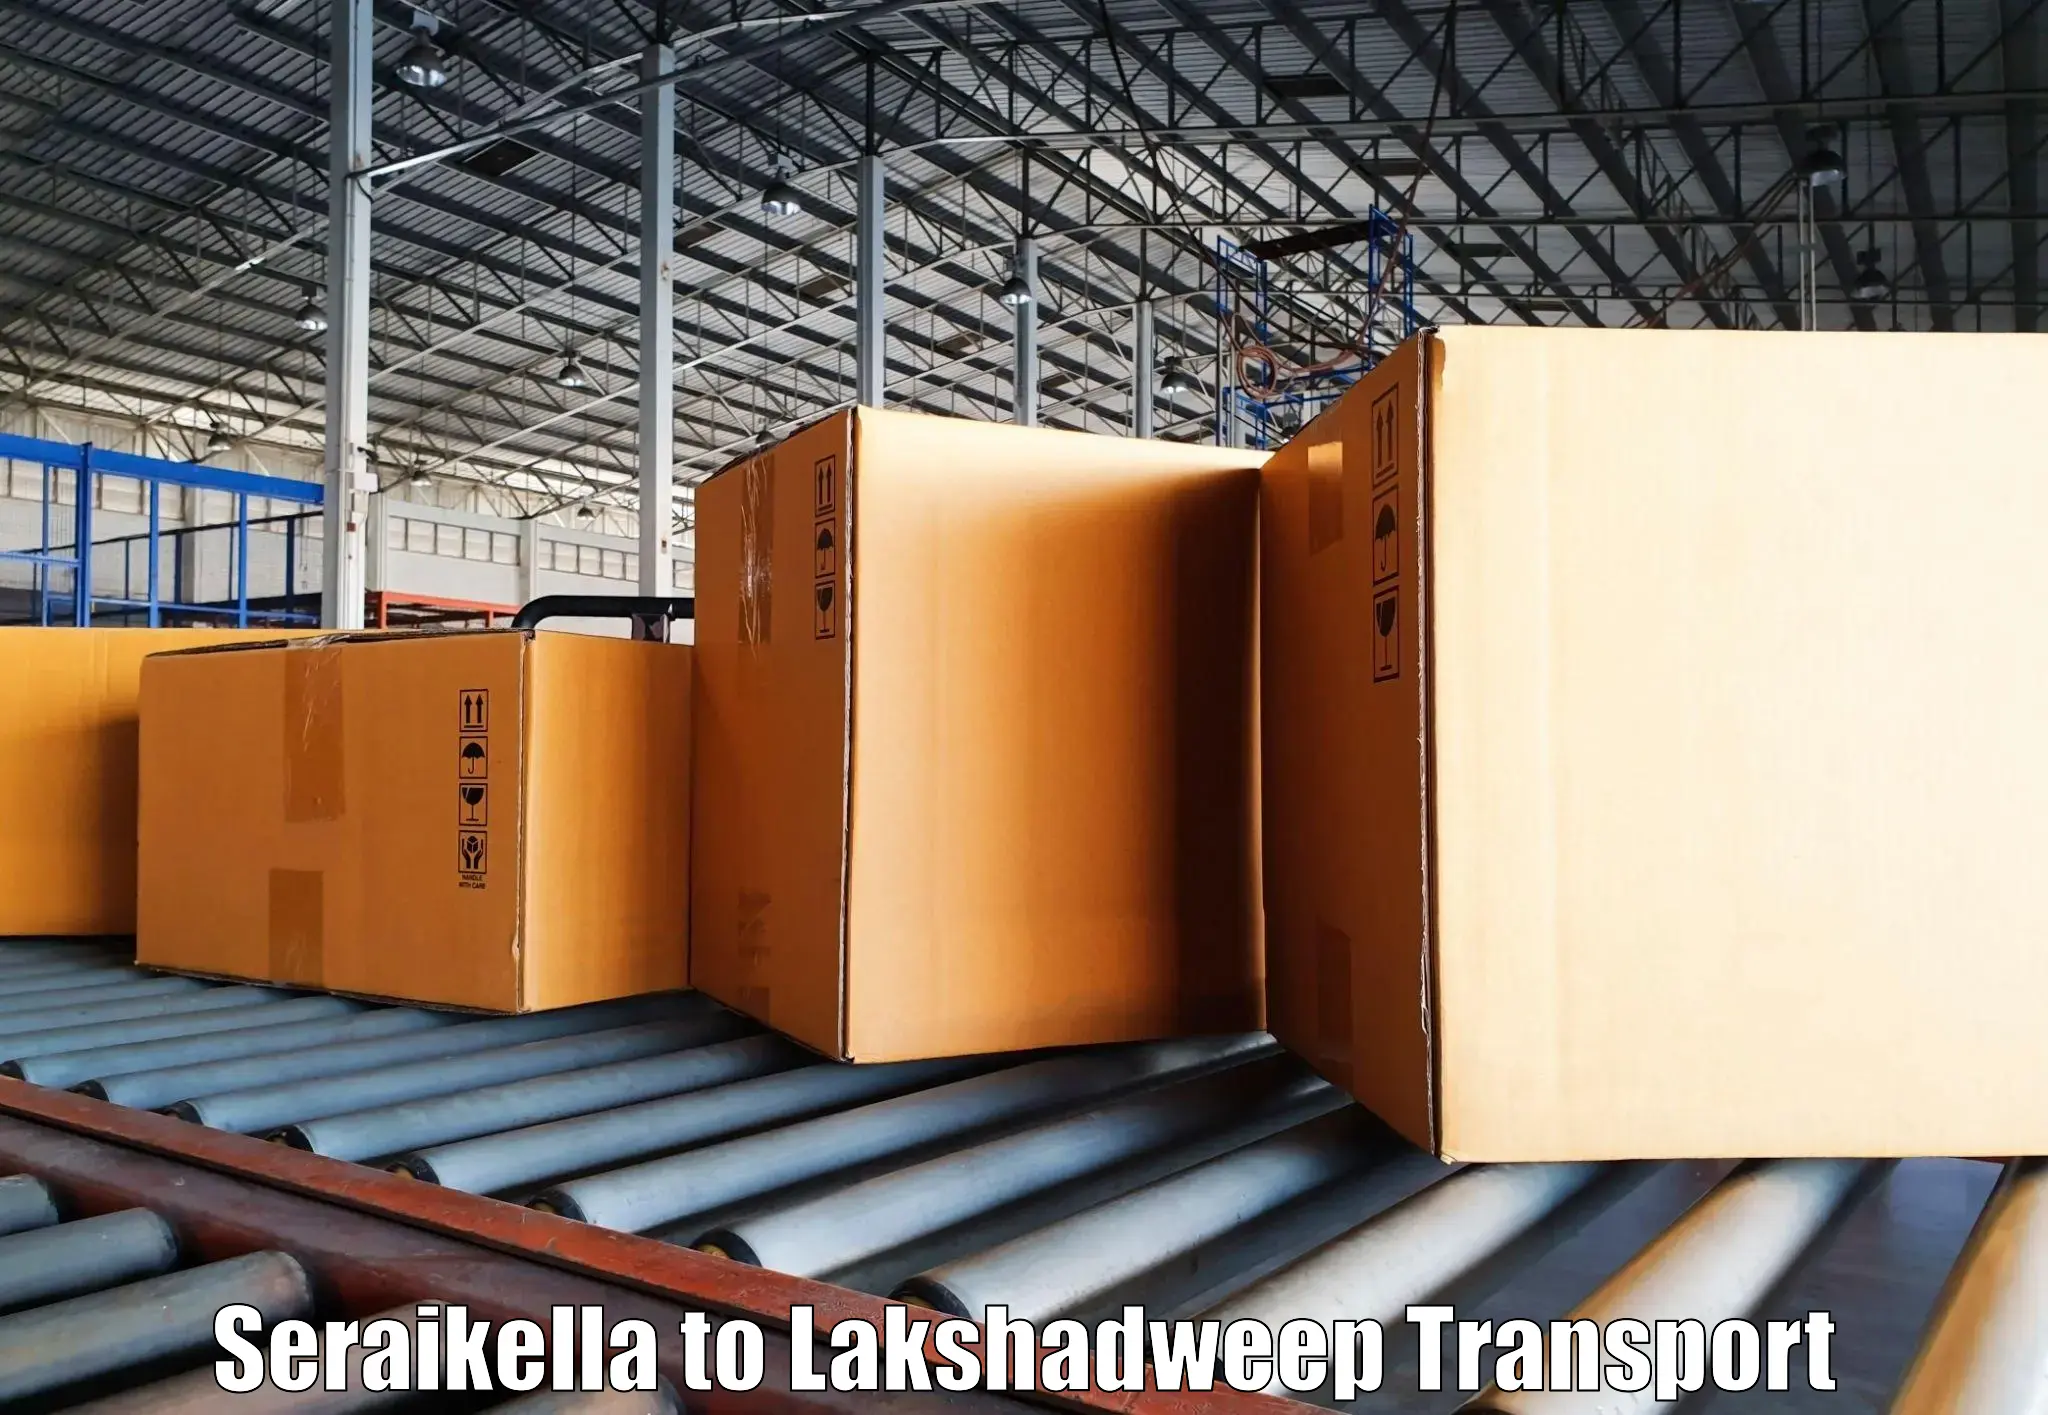 Furniture transport service Seraikella to Lakshadweep